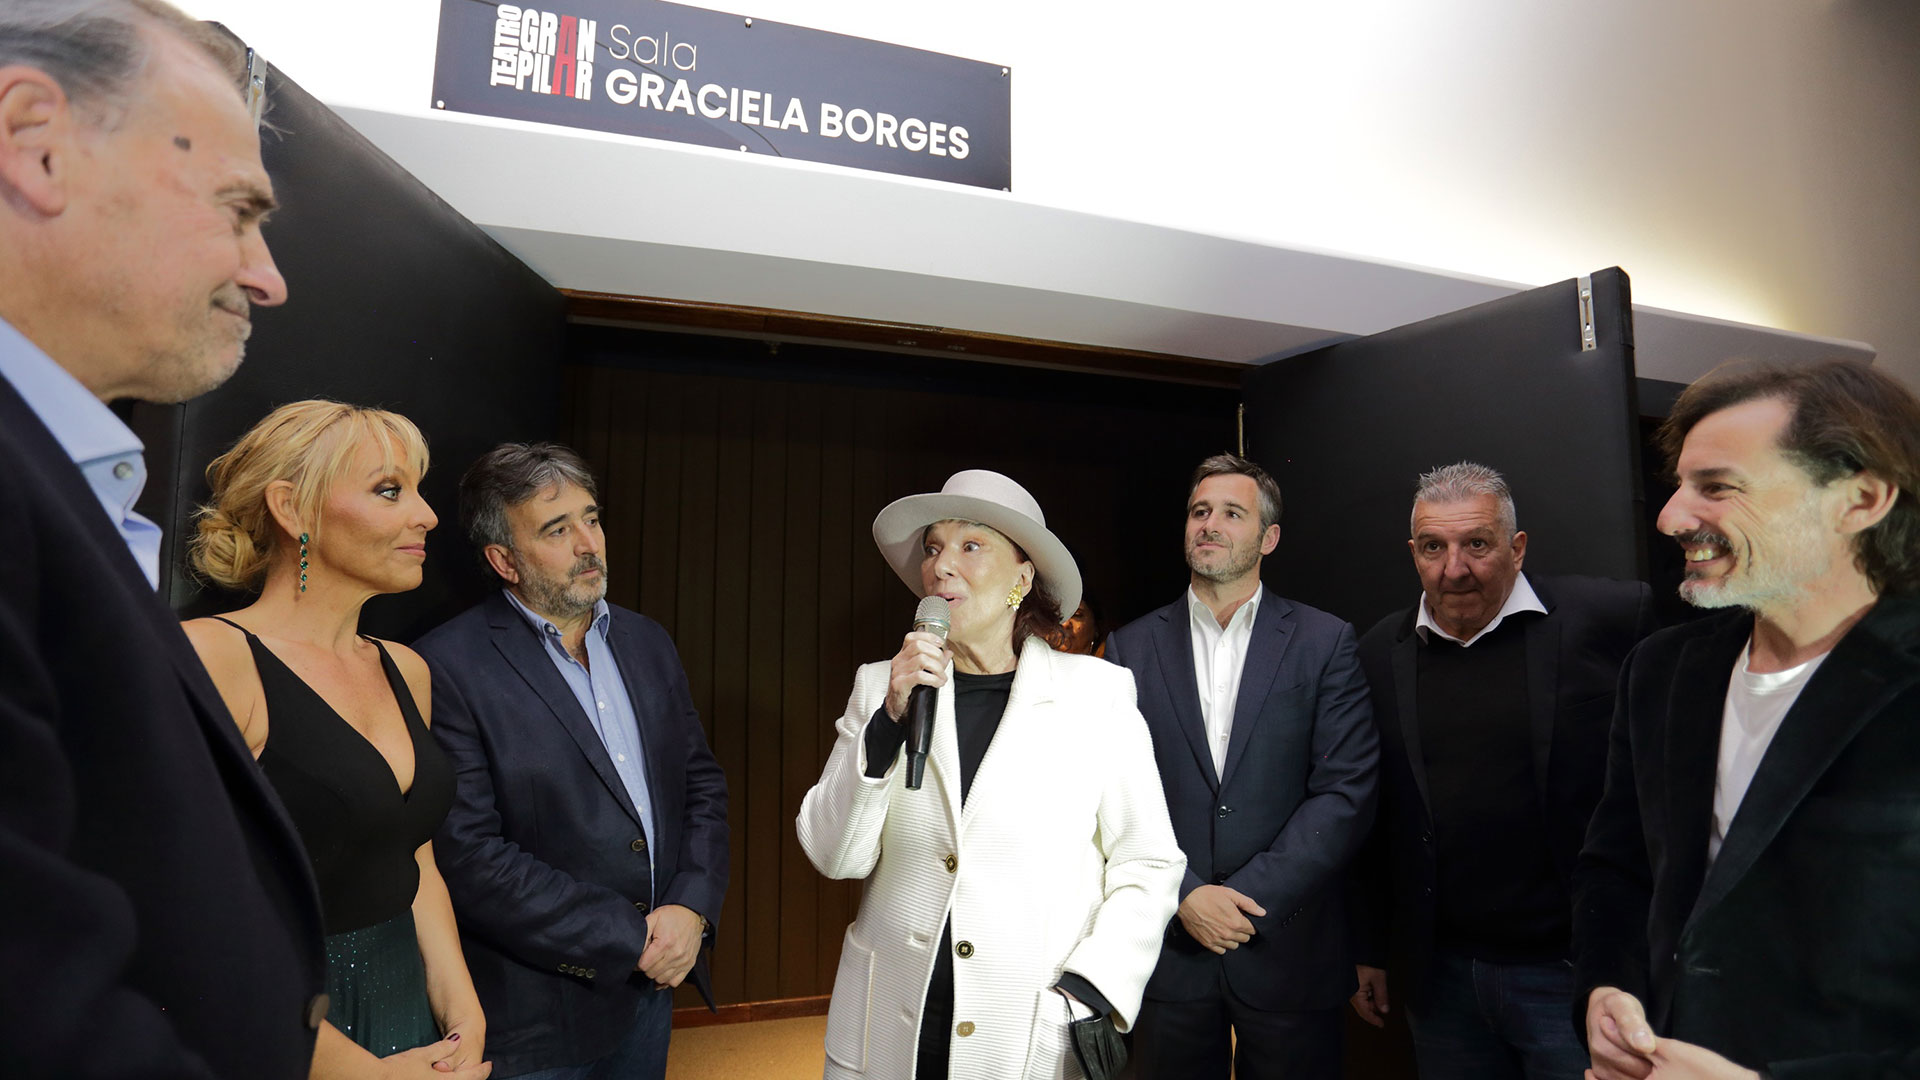 El teatro Gran Pilar reabrió sus puertas con Graciela Borges como madrina y un show de alto vuelo